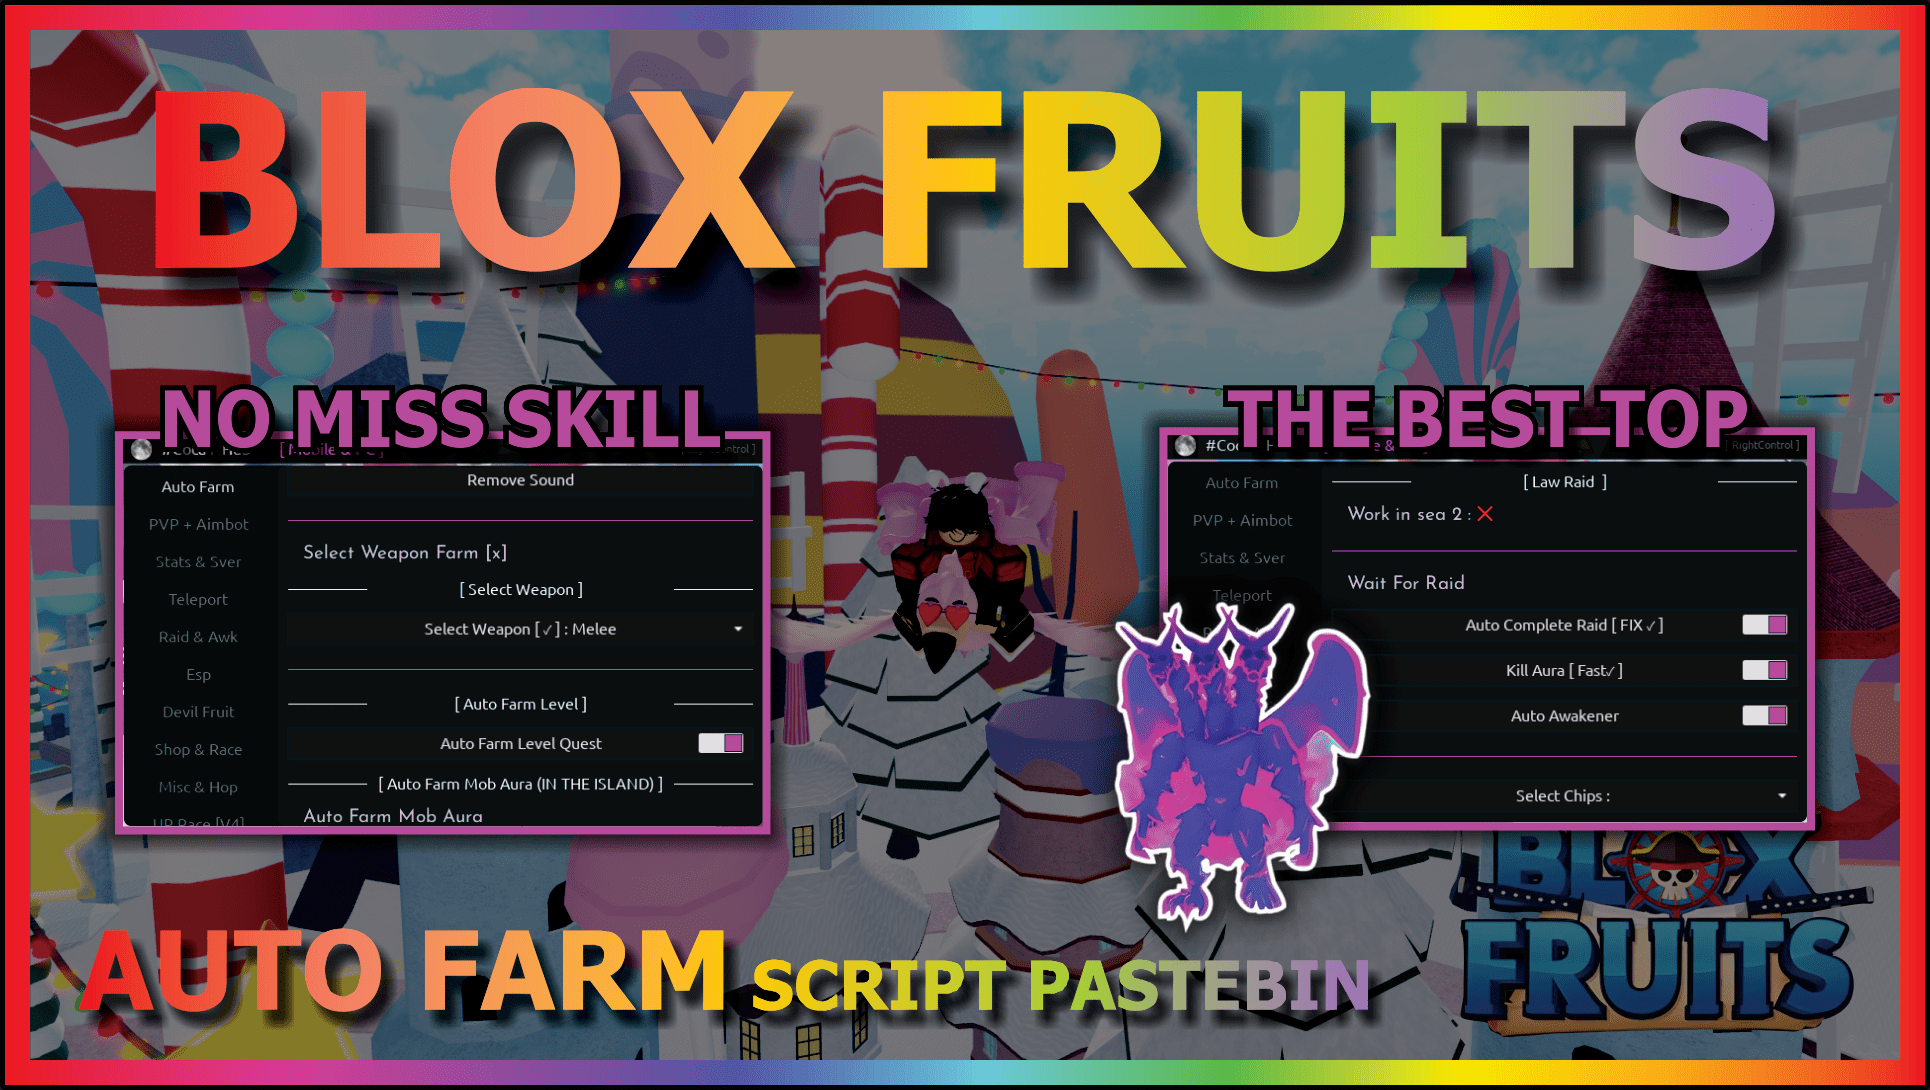 Blox Fruit Script *Scriptpastebin*, Auto Farm Level